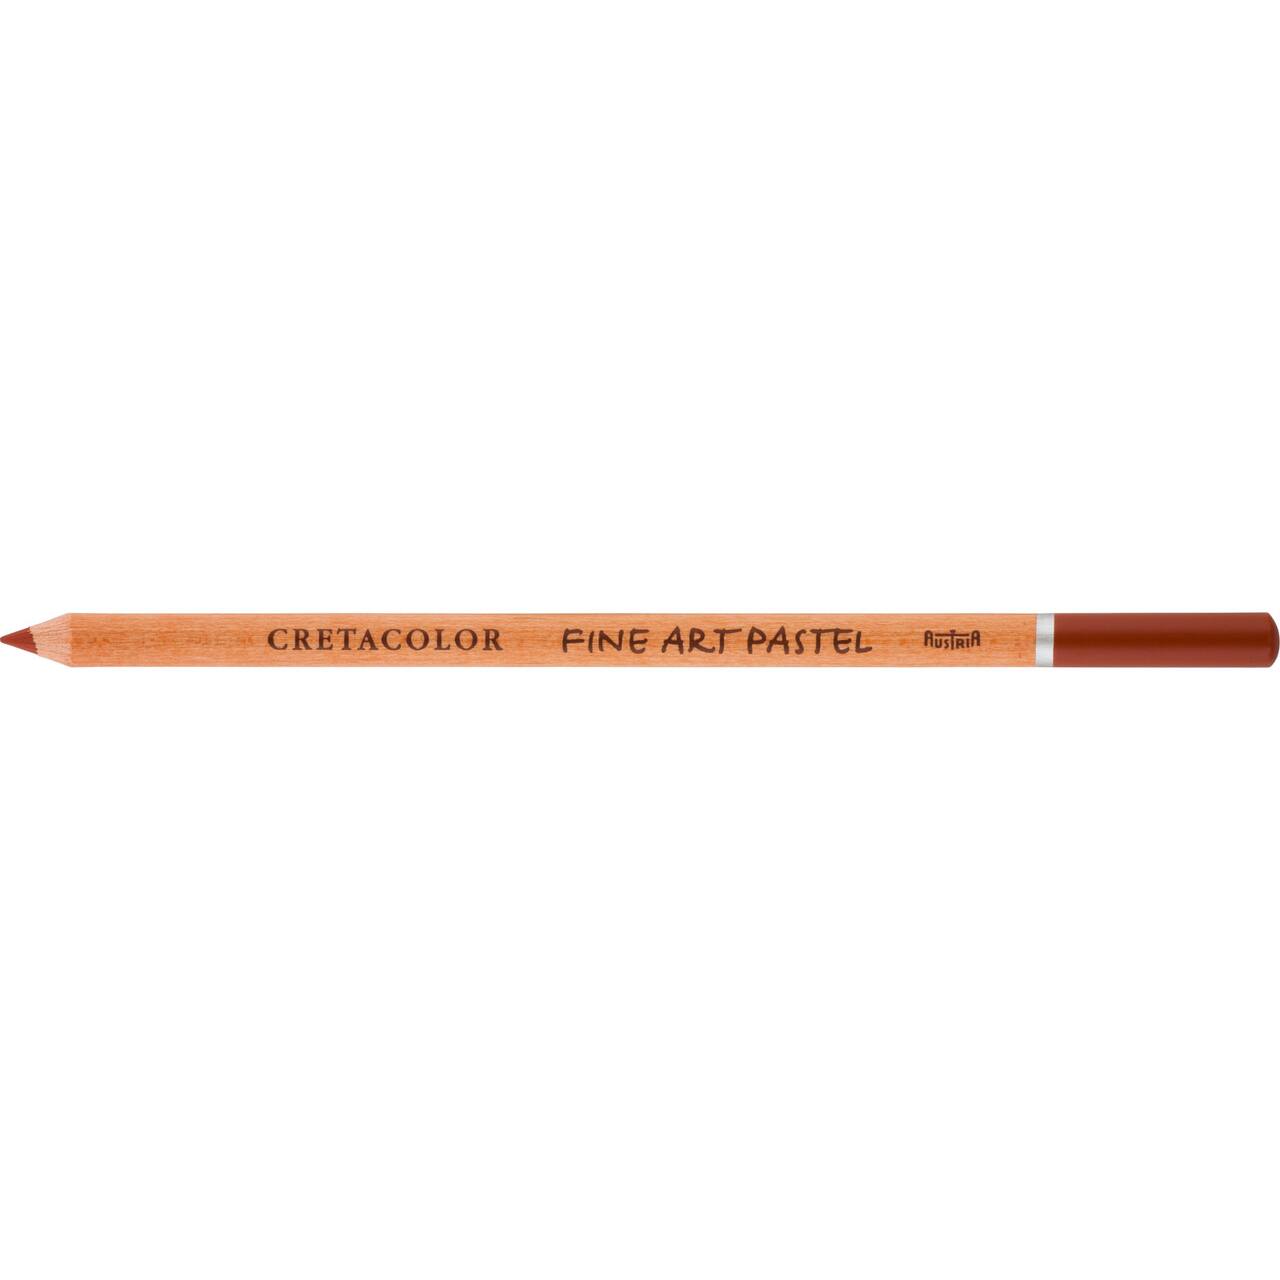 Cretacolor Fine Art Pastel Pencil